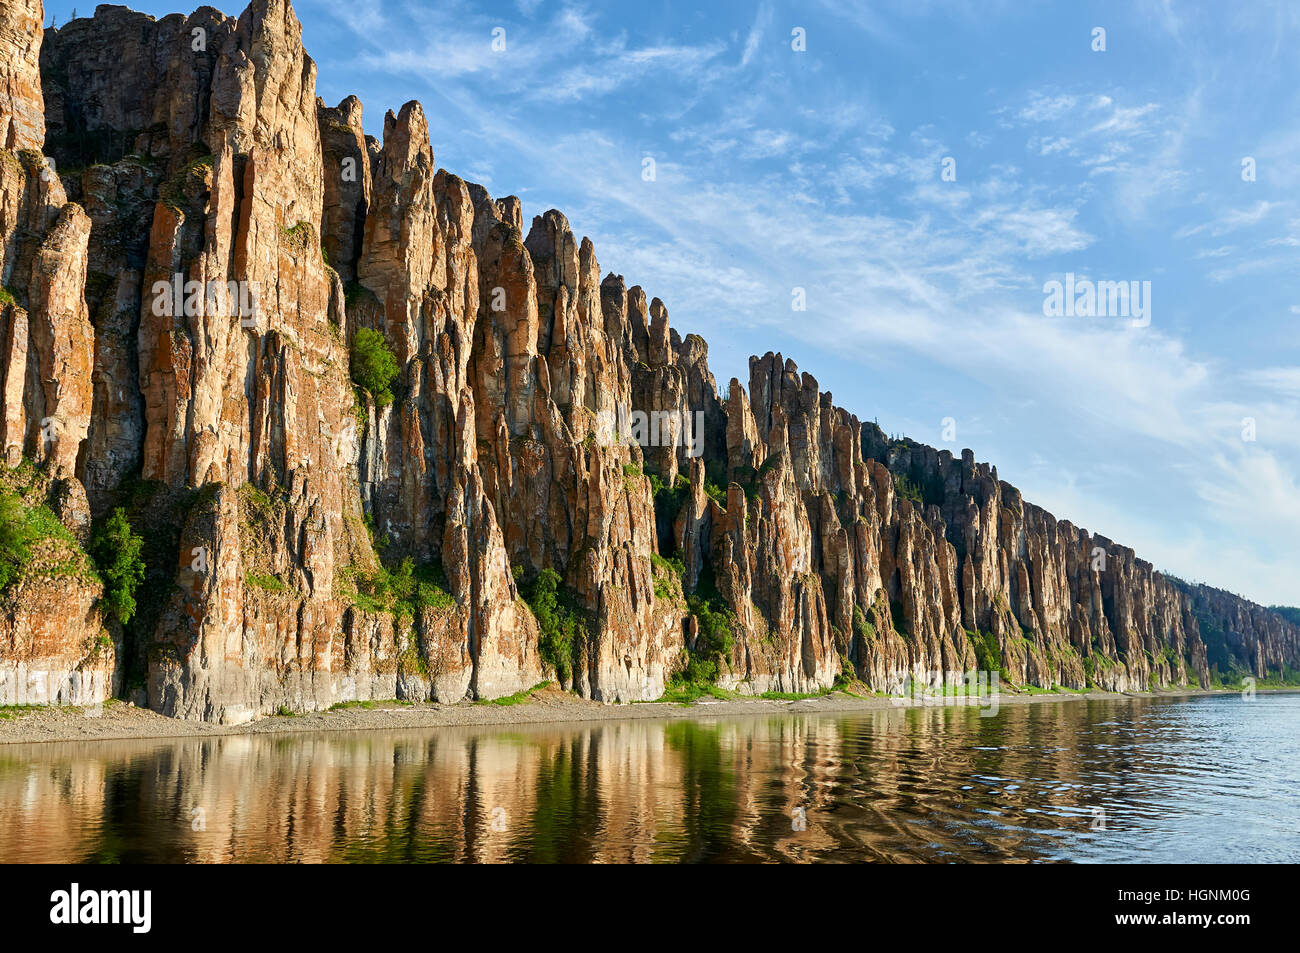 Parc national des colonnes de la Lena, vue du fleuve Lena au coucher du soleil, le patrimoine de l'UNESCO mis en Yakoutie, Sibérie, Russie Banque D'Images